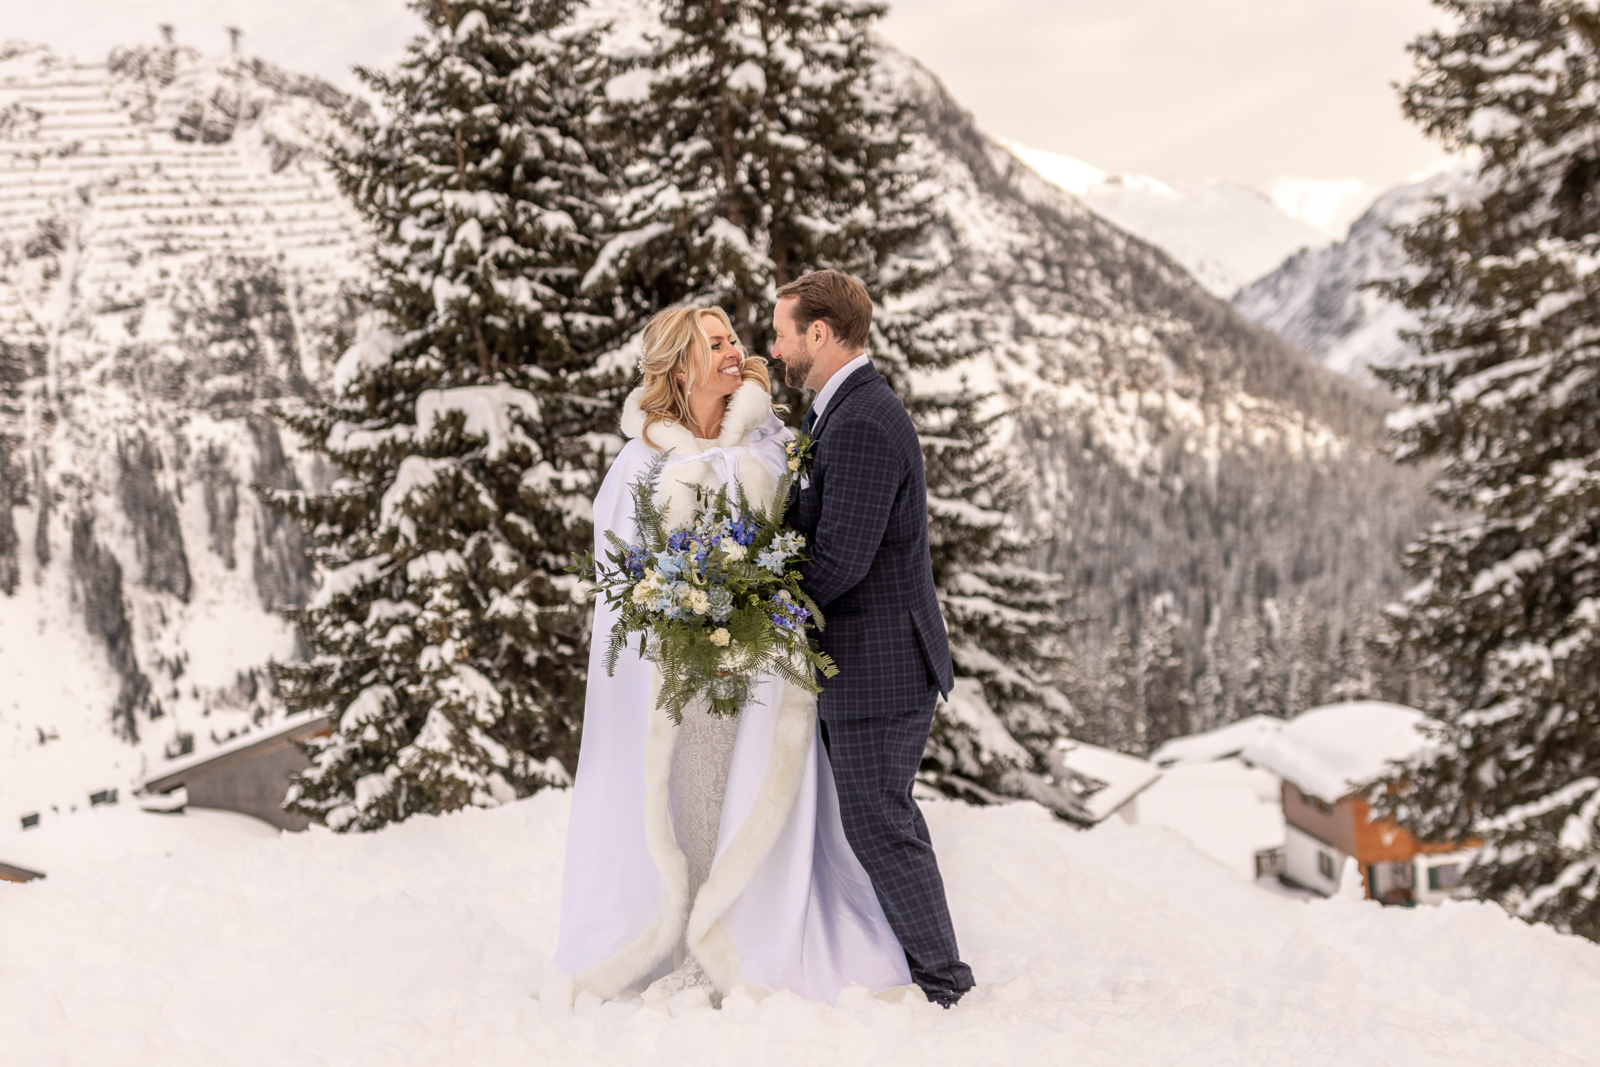 Winter Wedding Photos in the Mountains